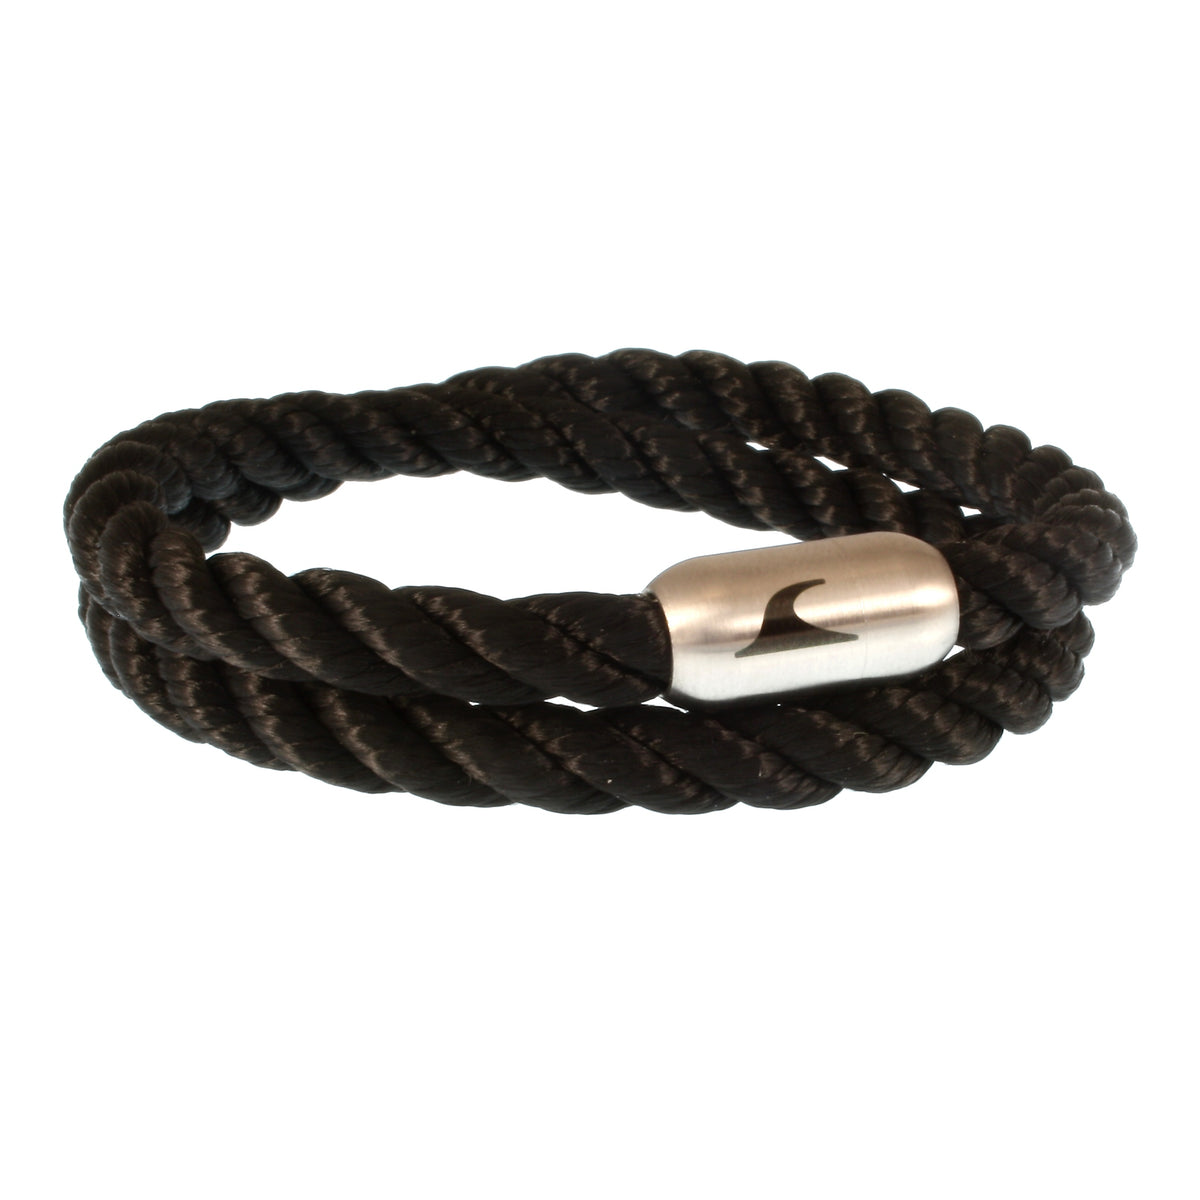 Herren-Segeltau-Armband-hawaii-schwarz-silber-Edelstahlverschluss-vorn-wavepirate-shop-k